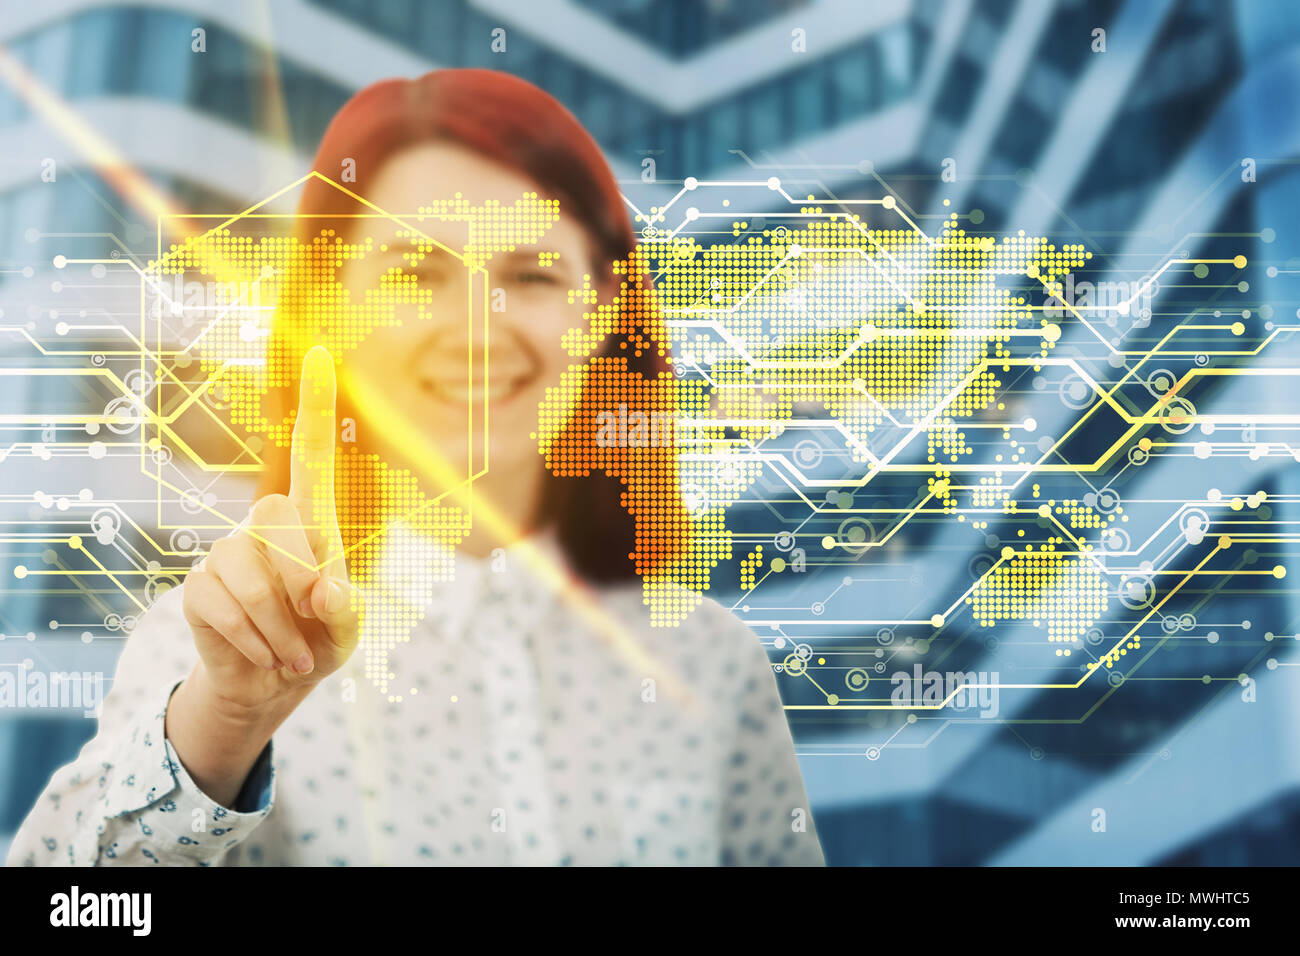 Smiling woman touching digital interface de l'écran avec son doigt. Choisissez un endroit sur la carte du monde d'hologramme. Le développement de technologie d'entreprise. Vir Banque D'Images